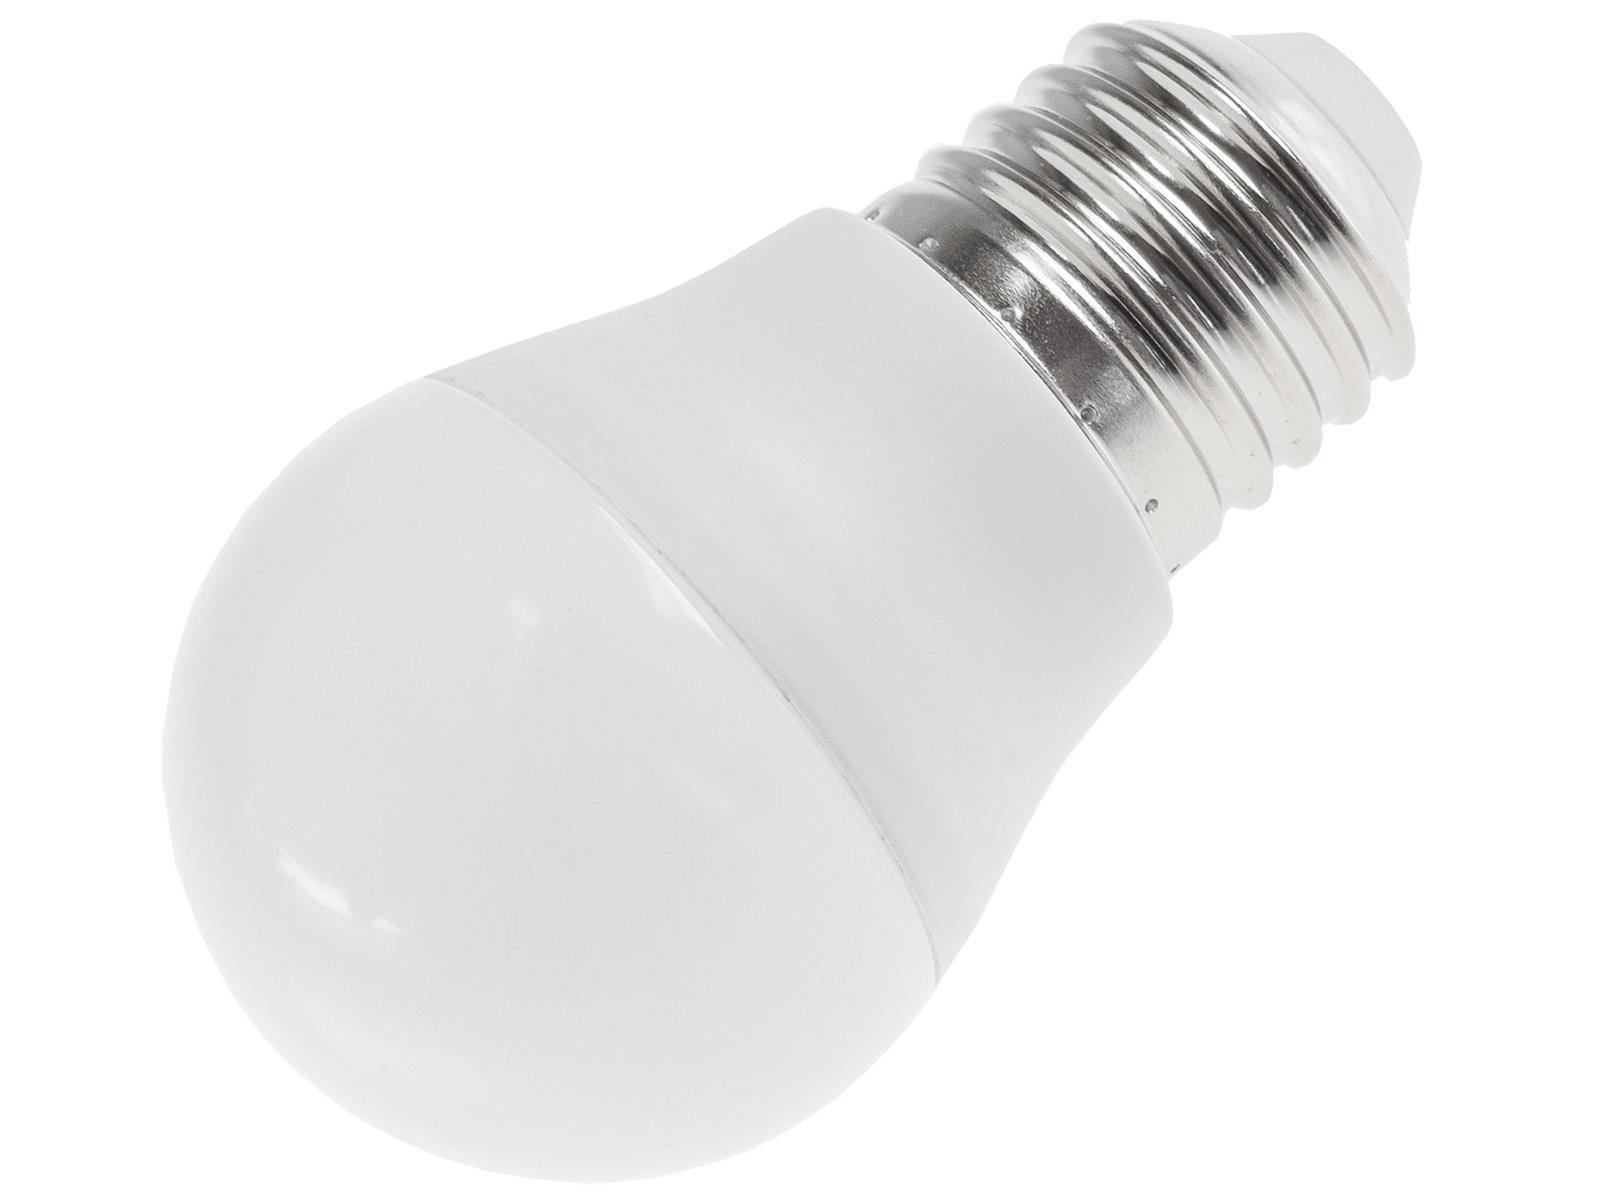 LED Tropfenlampe E27 "T25 SMD" warmweiß 3000k, 270lm, 230V/3W, 45mm